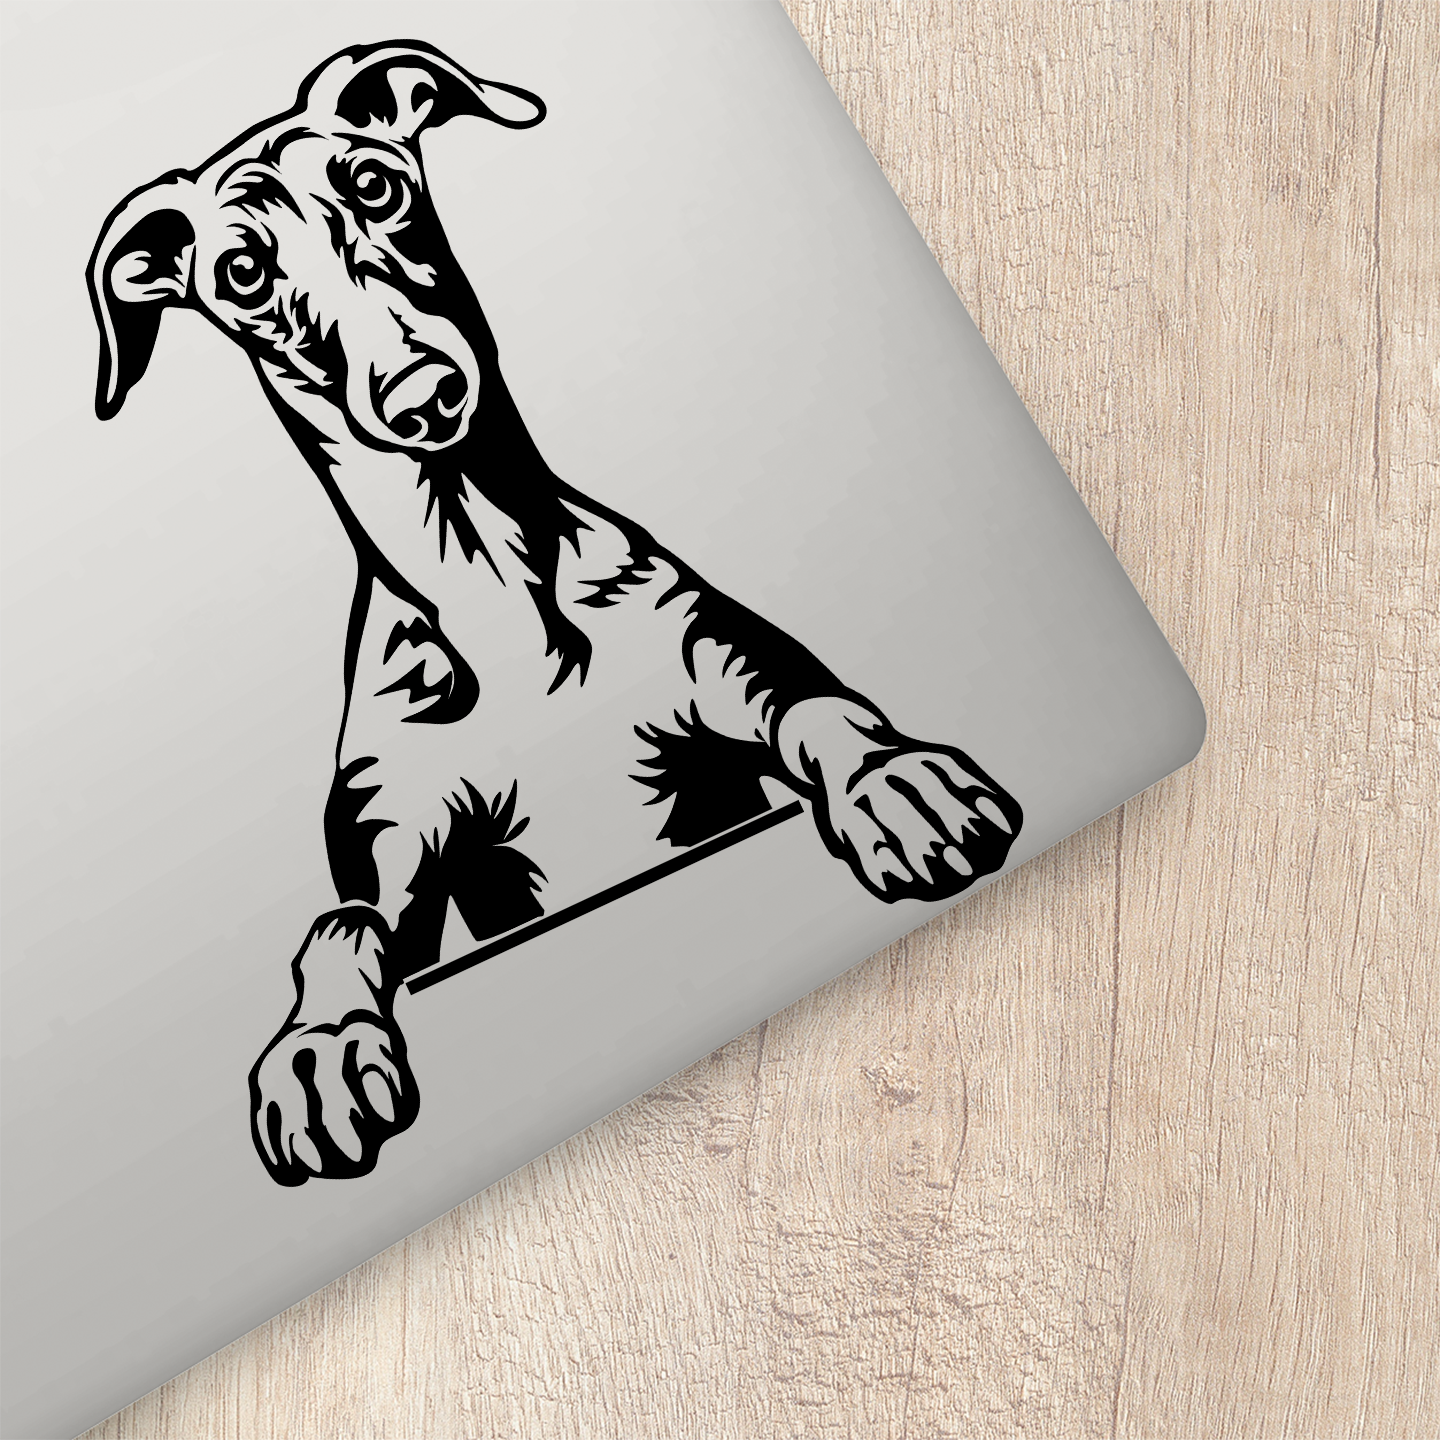 Greyhound Peeping Sticker